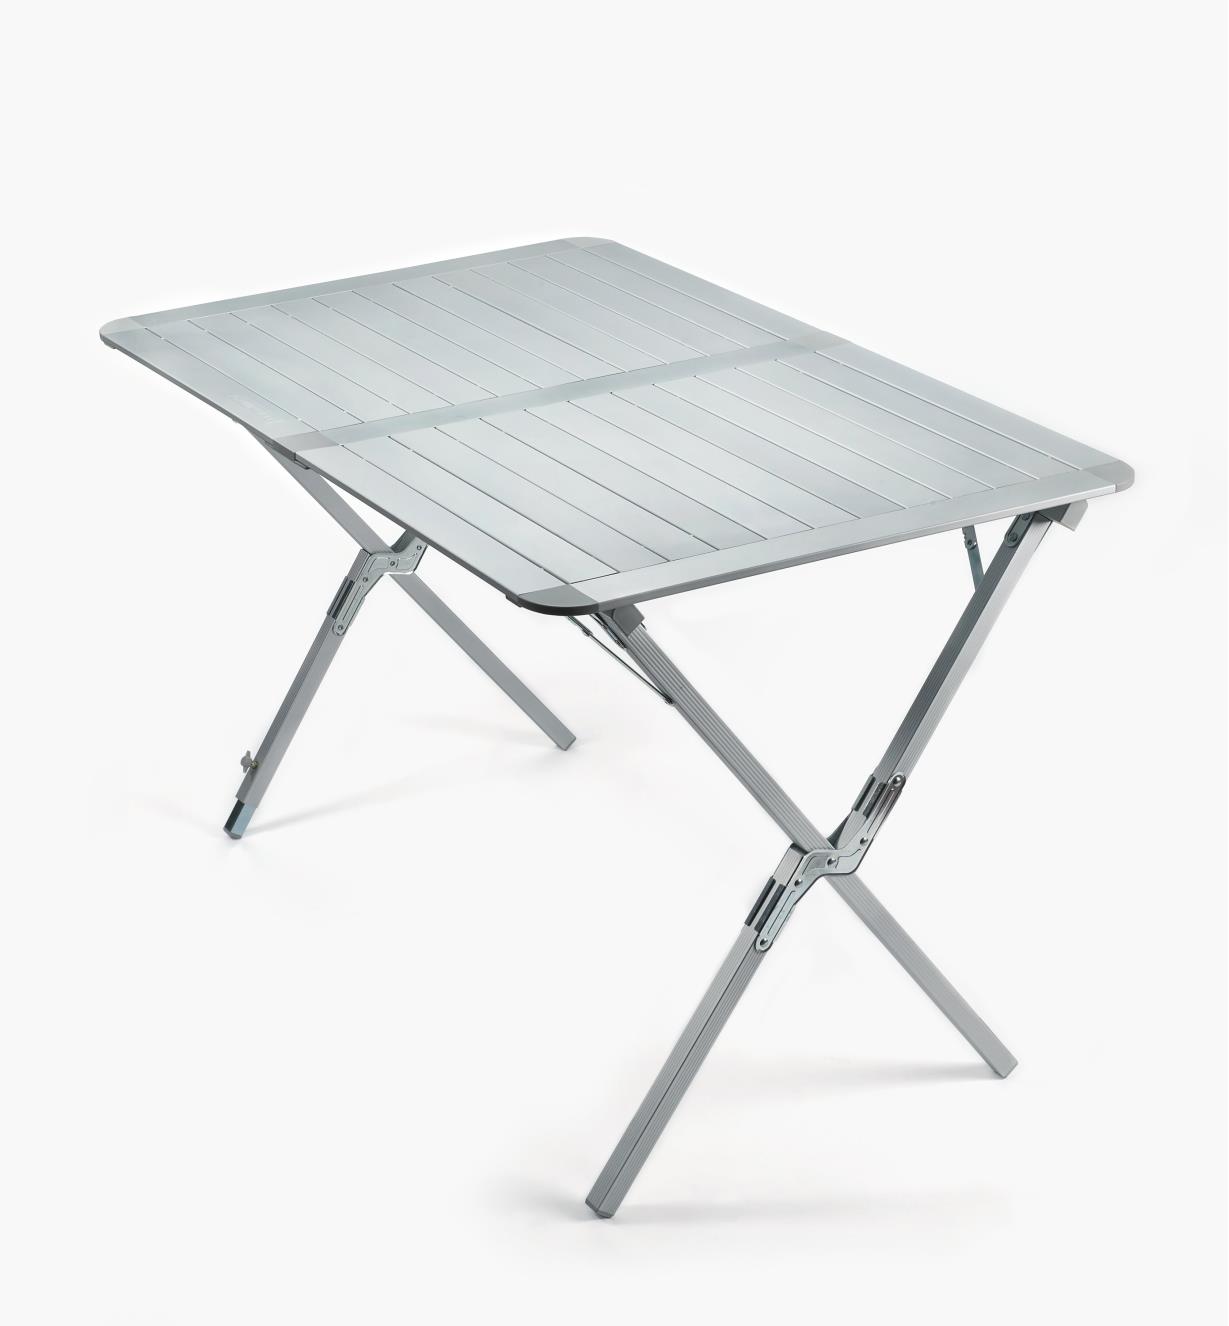 Aluminium folding table 